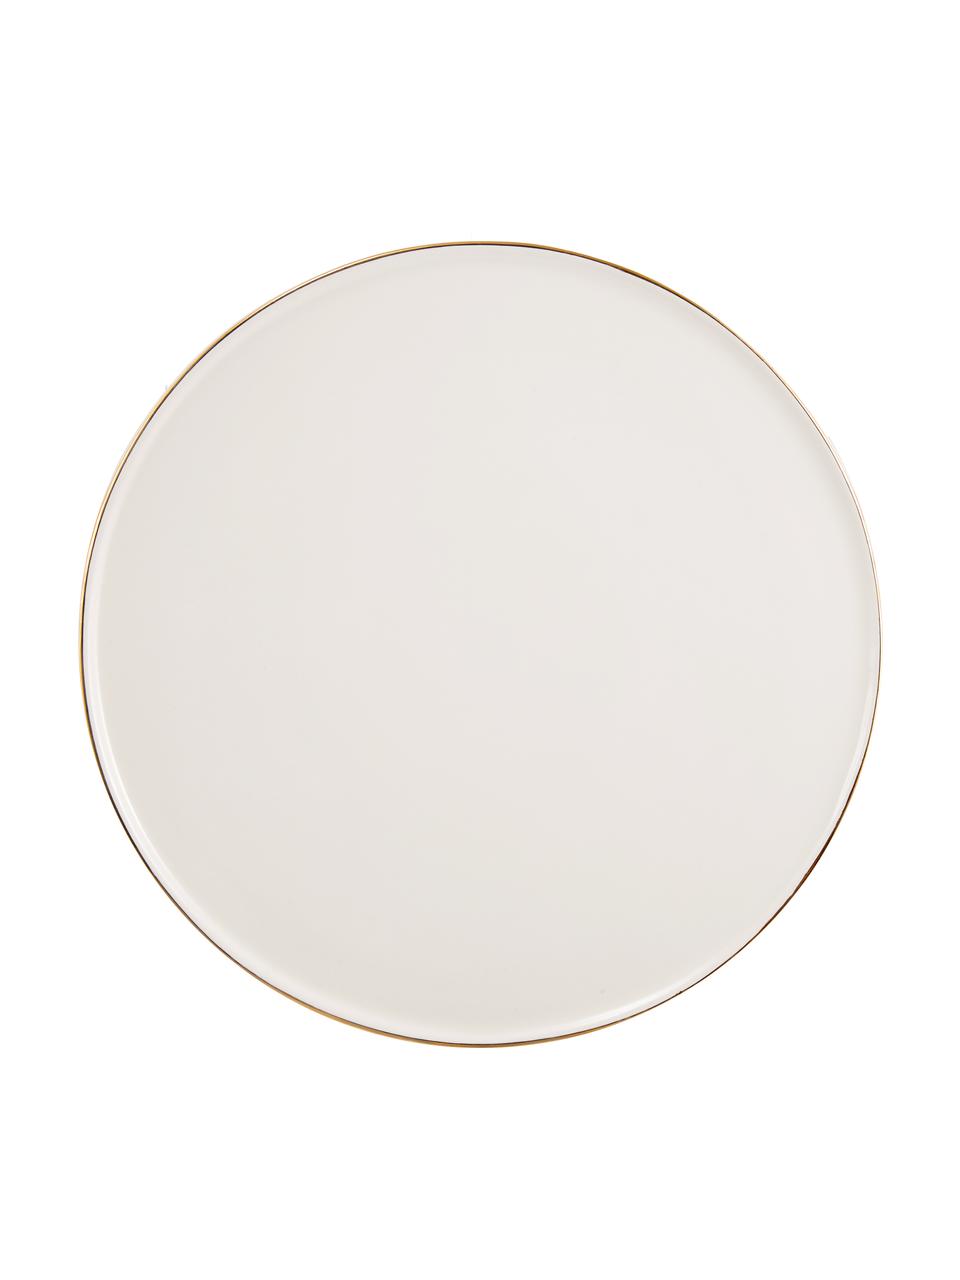 Handgemaakte taartplateau Allure met goudkleurige rand, Keramiek, Wit, goudkleurig, Ø 28 x H 8 cm